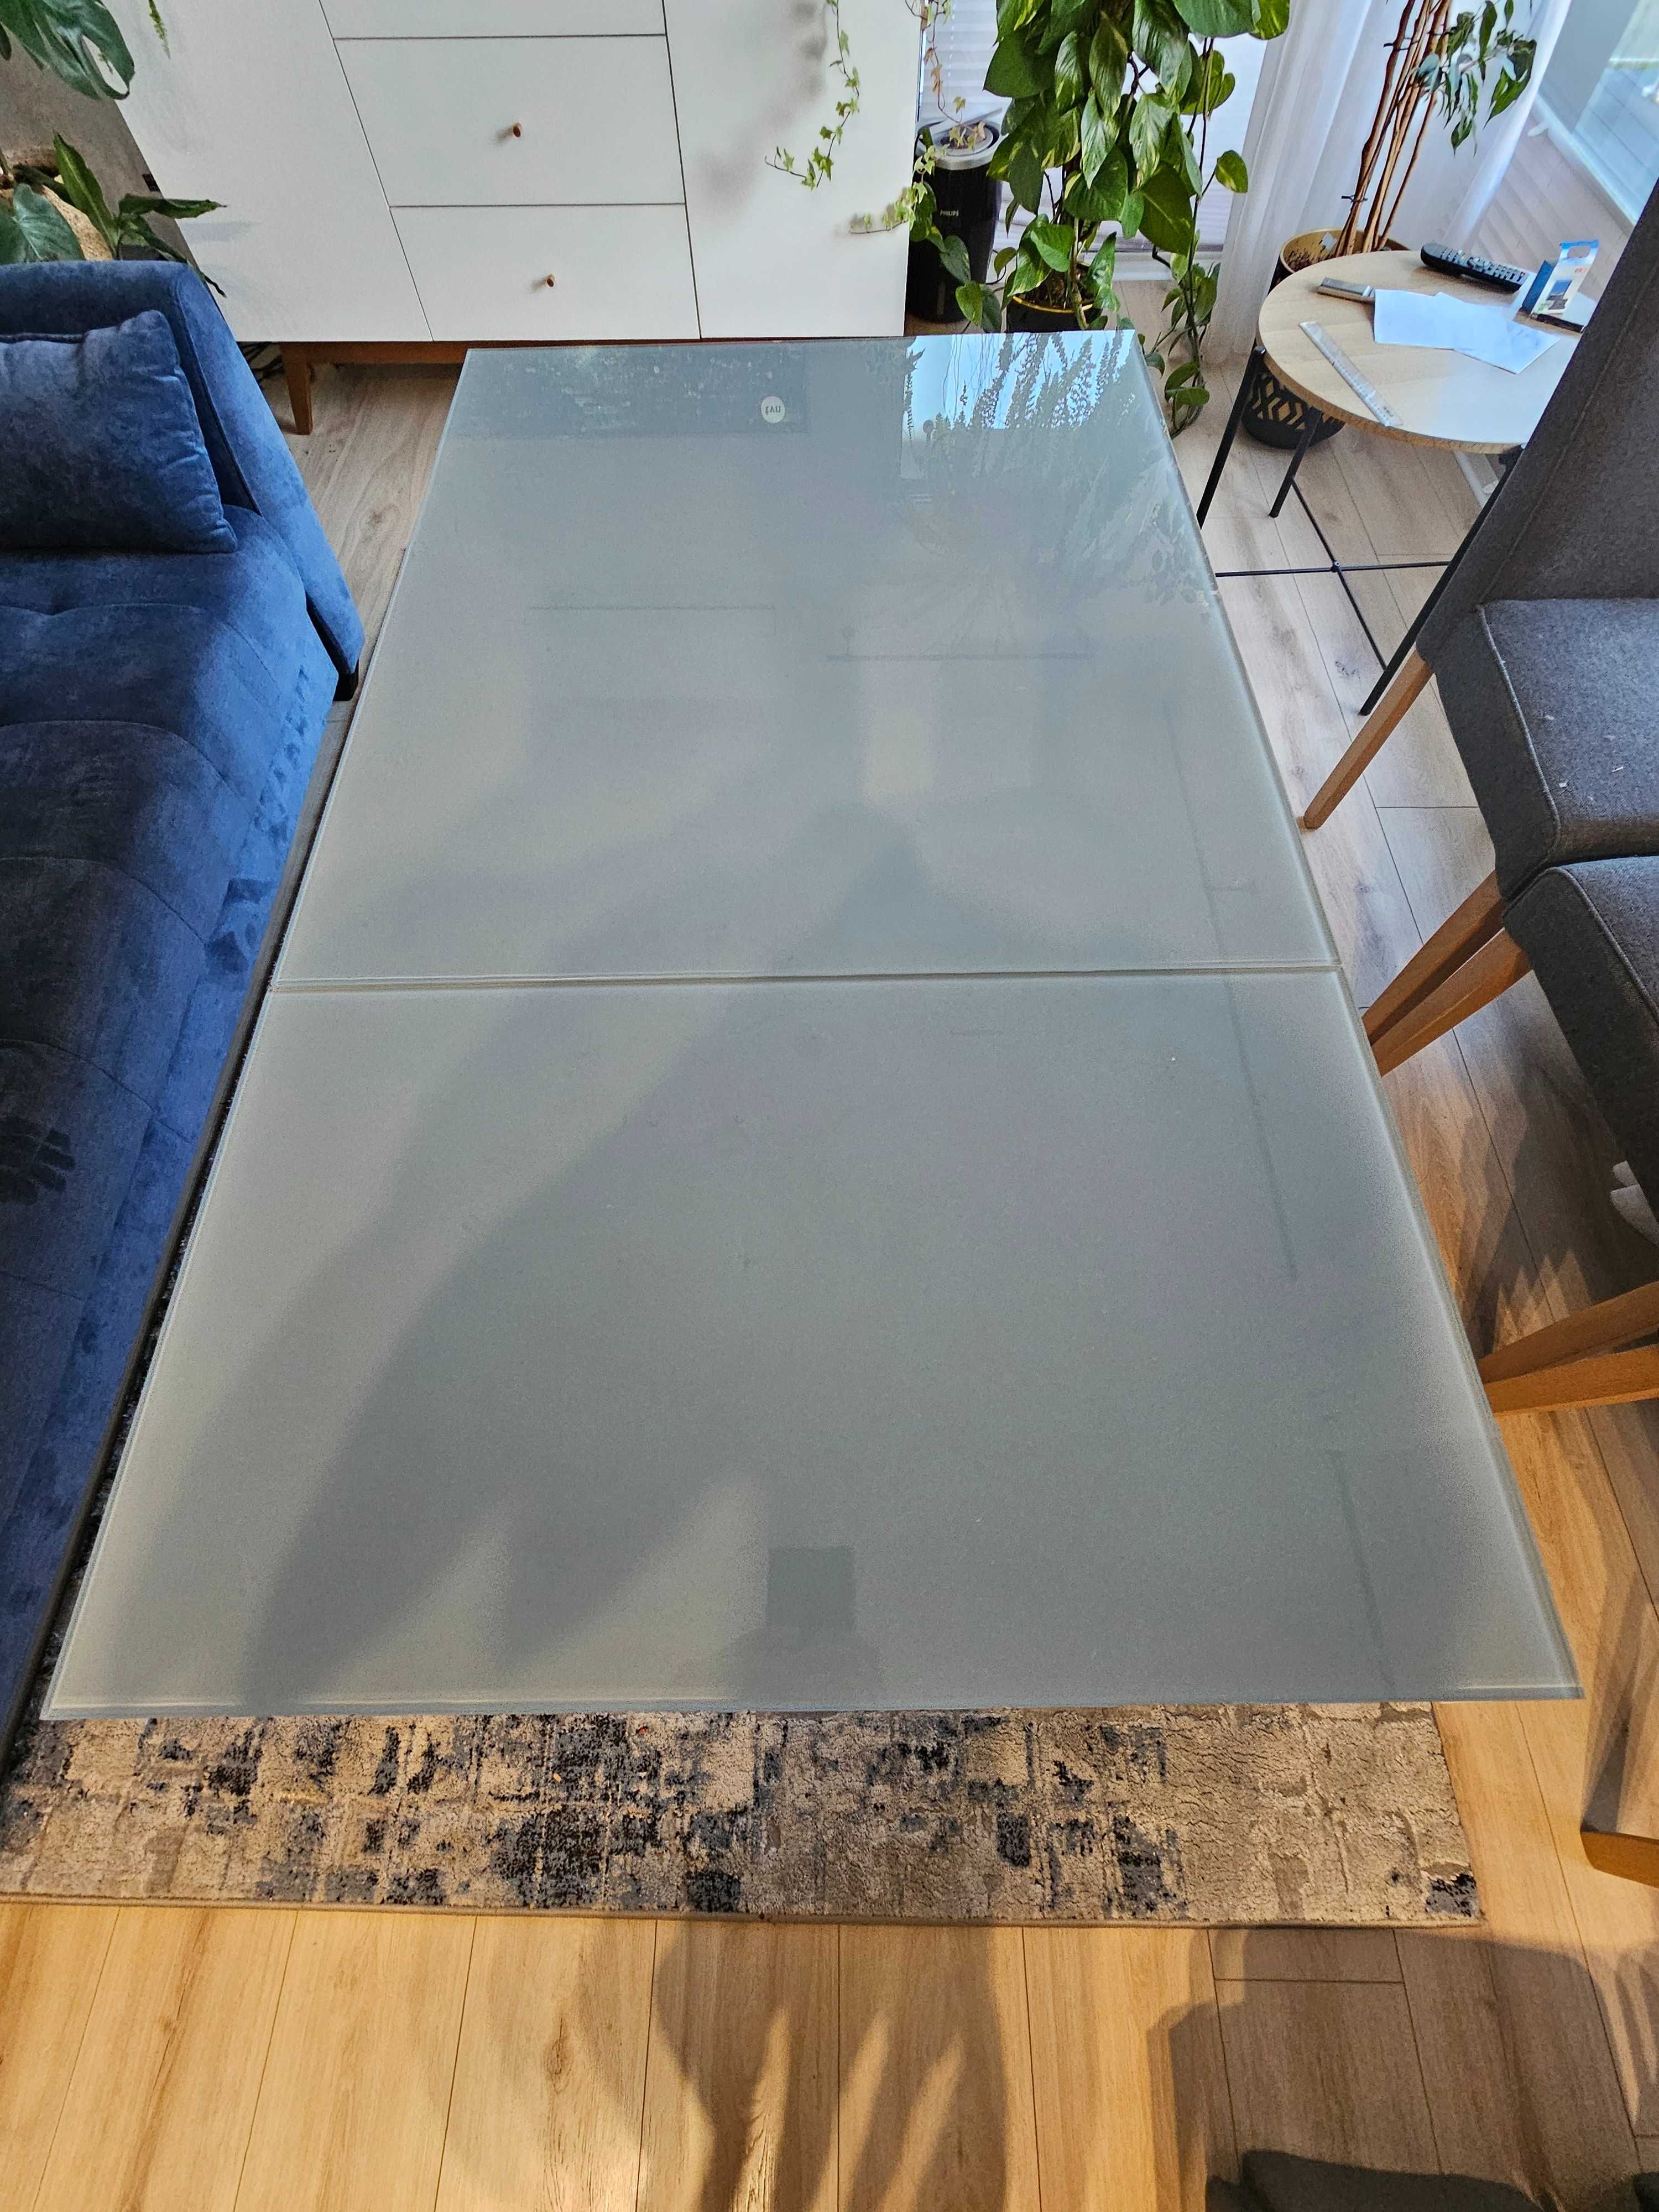 Stół rozkładany biały Ikea Vangsta